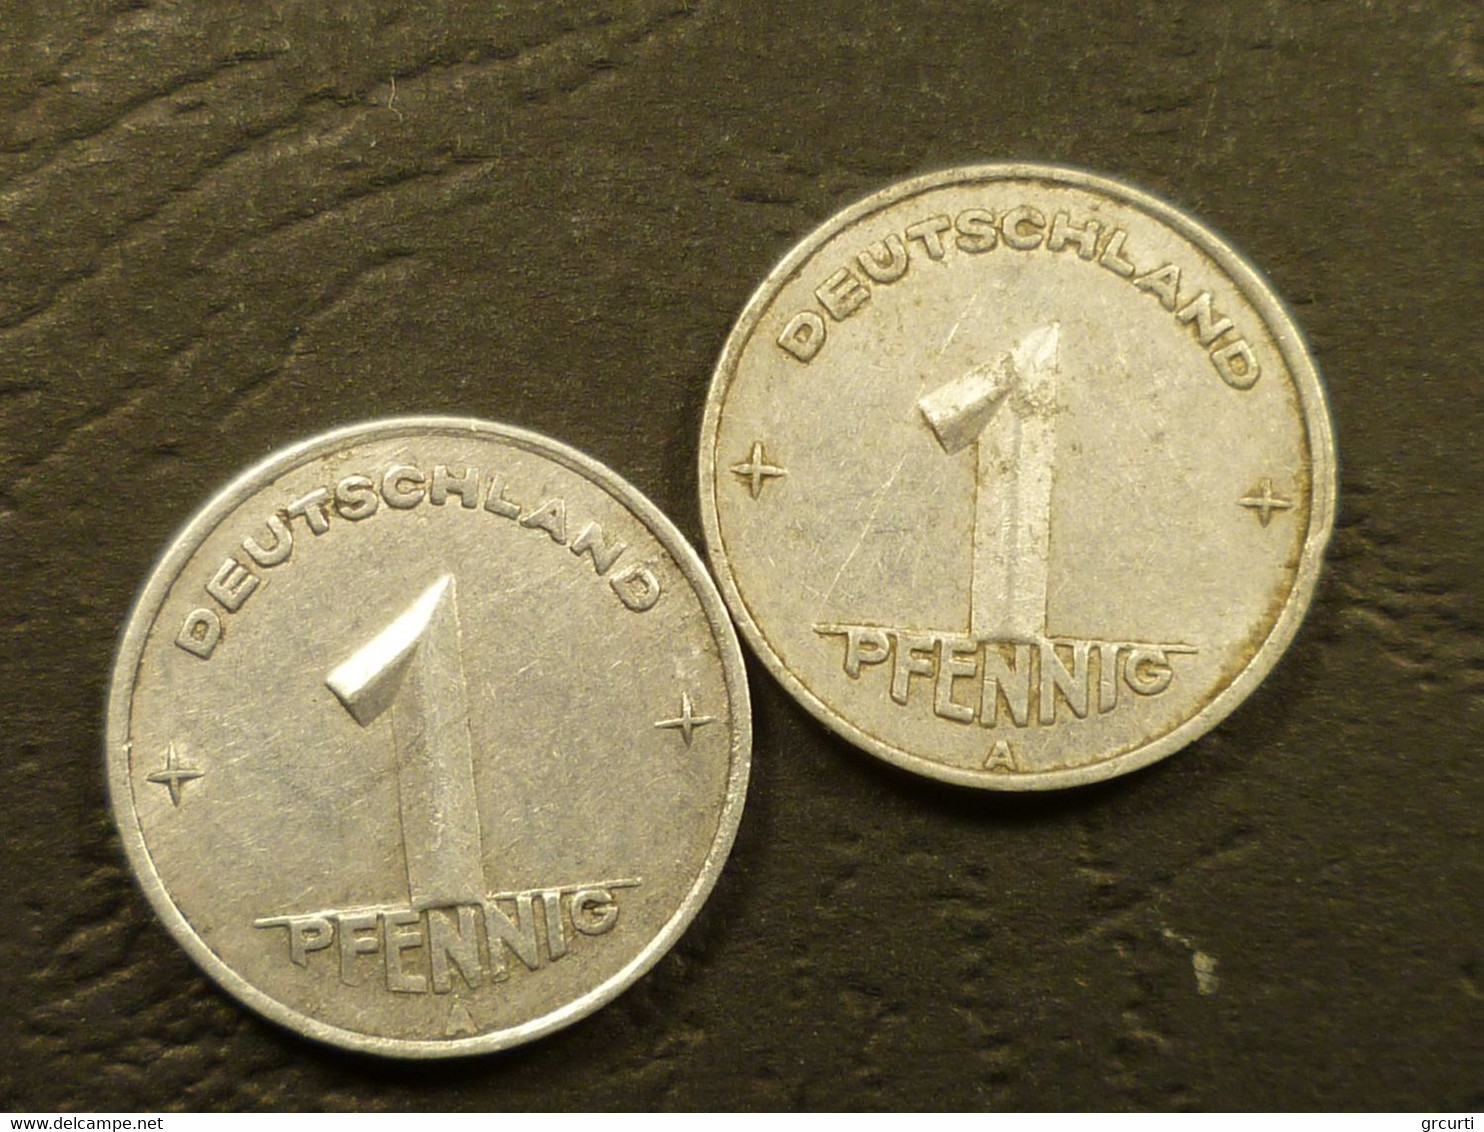 Germania, Repubblica Democratica - D.D.R. Lotto 94 di monete in metalli comuni emesse fra il 1948 e il 1987